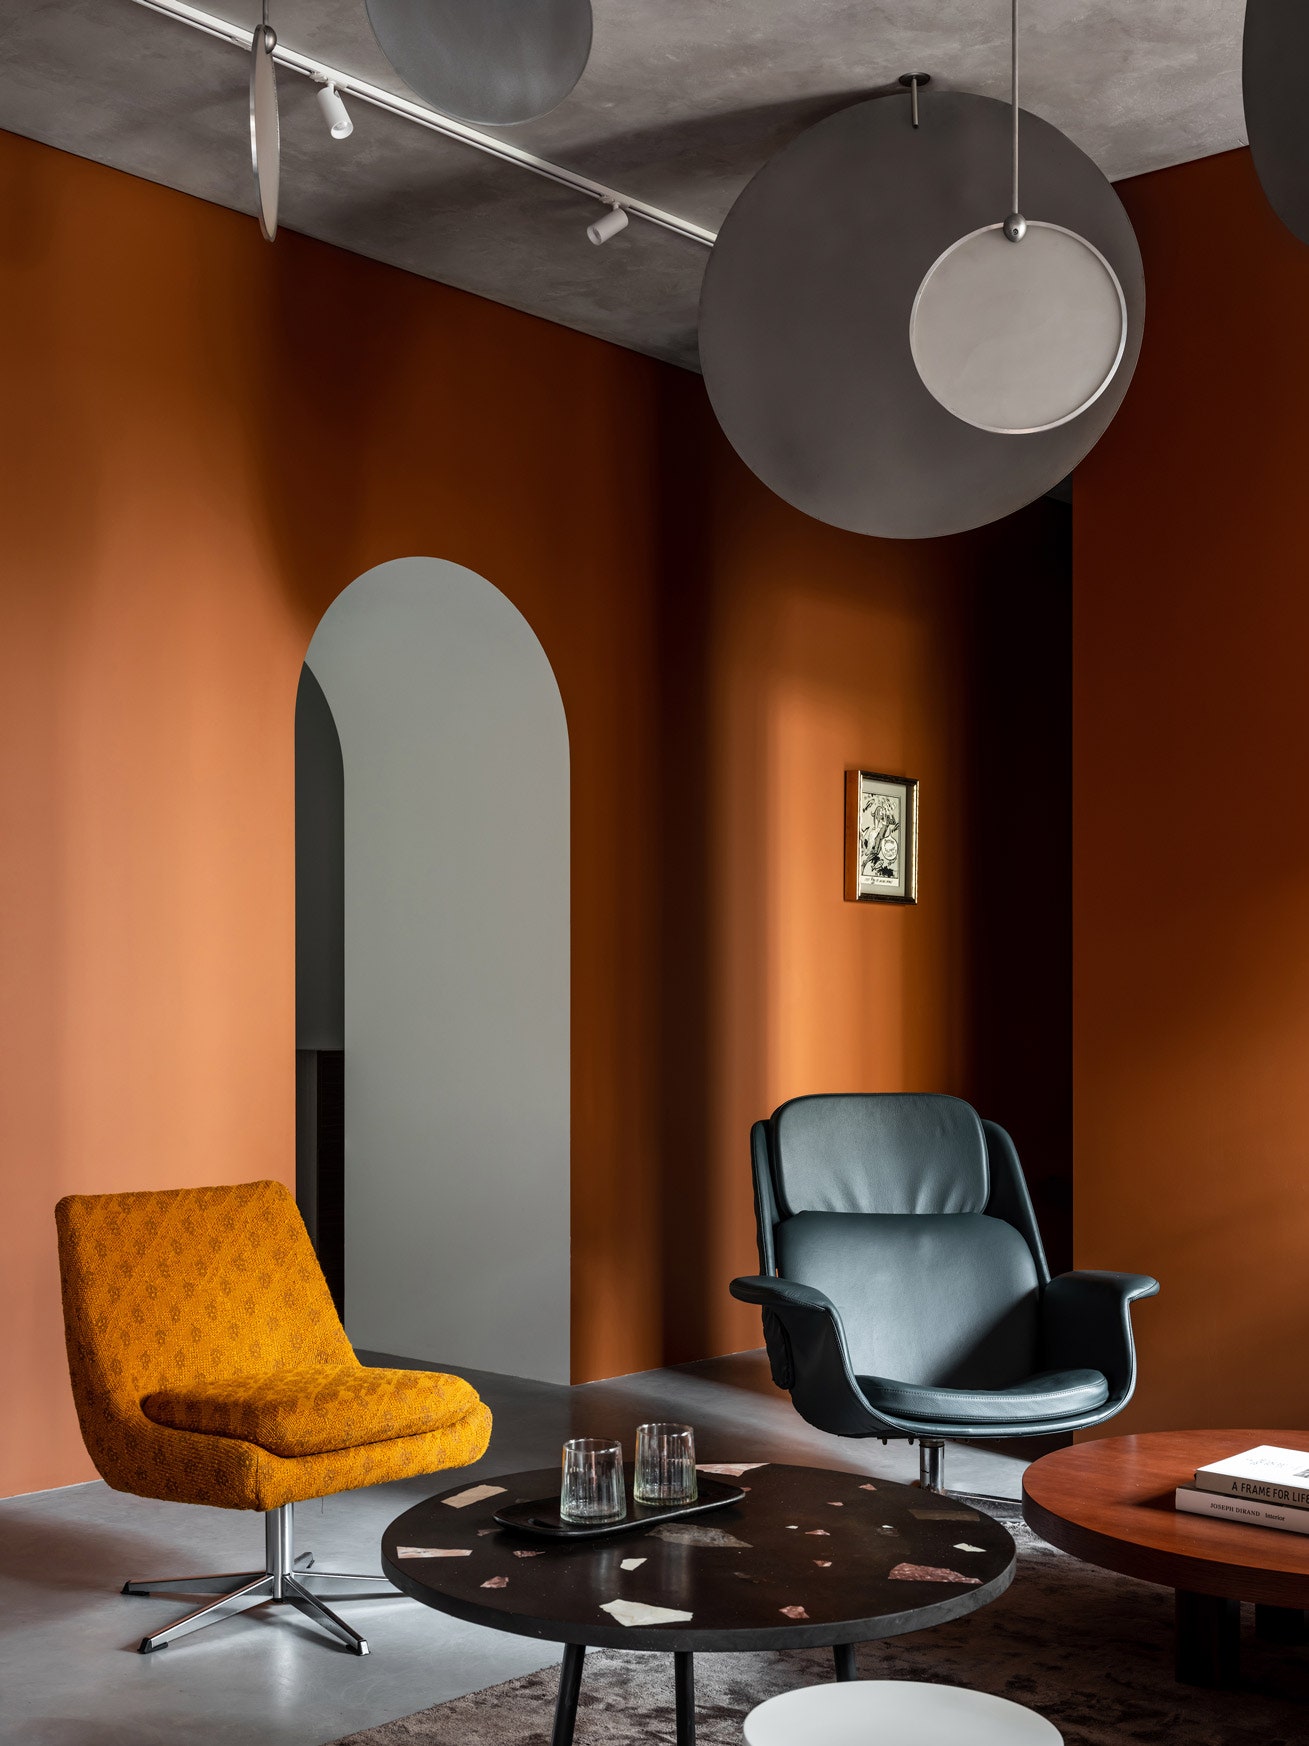 Лобби. Столик черный и ковер Nordal кресла Mobeledom светильники изготовлены по эскизам дизайнера.